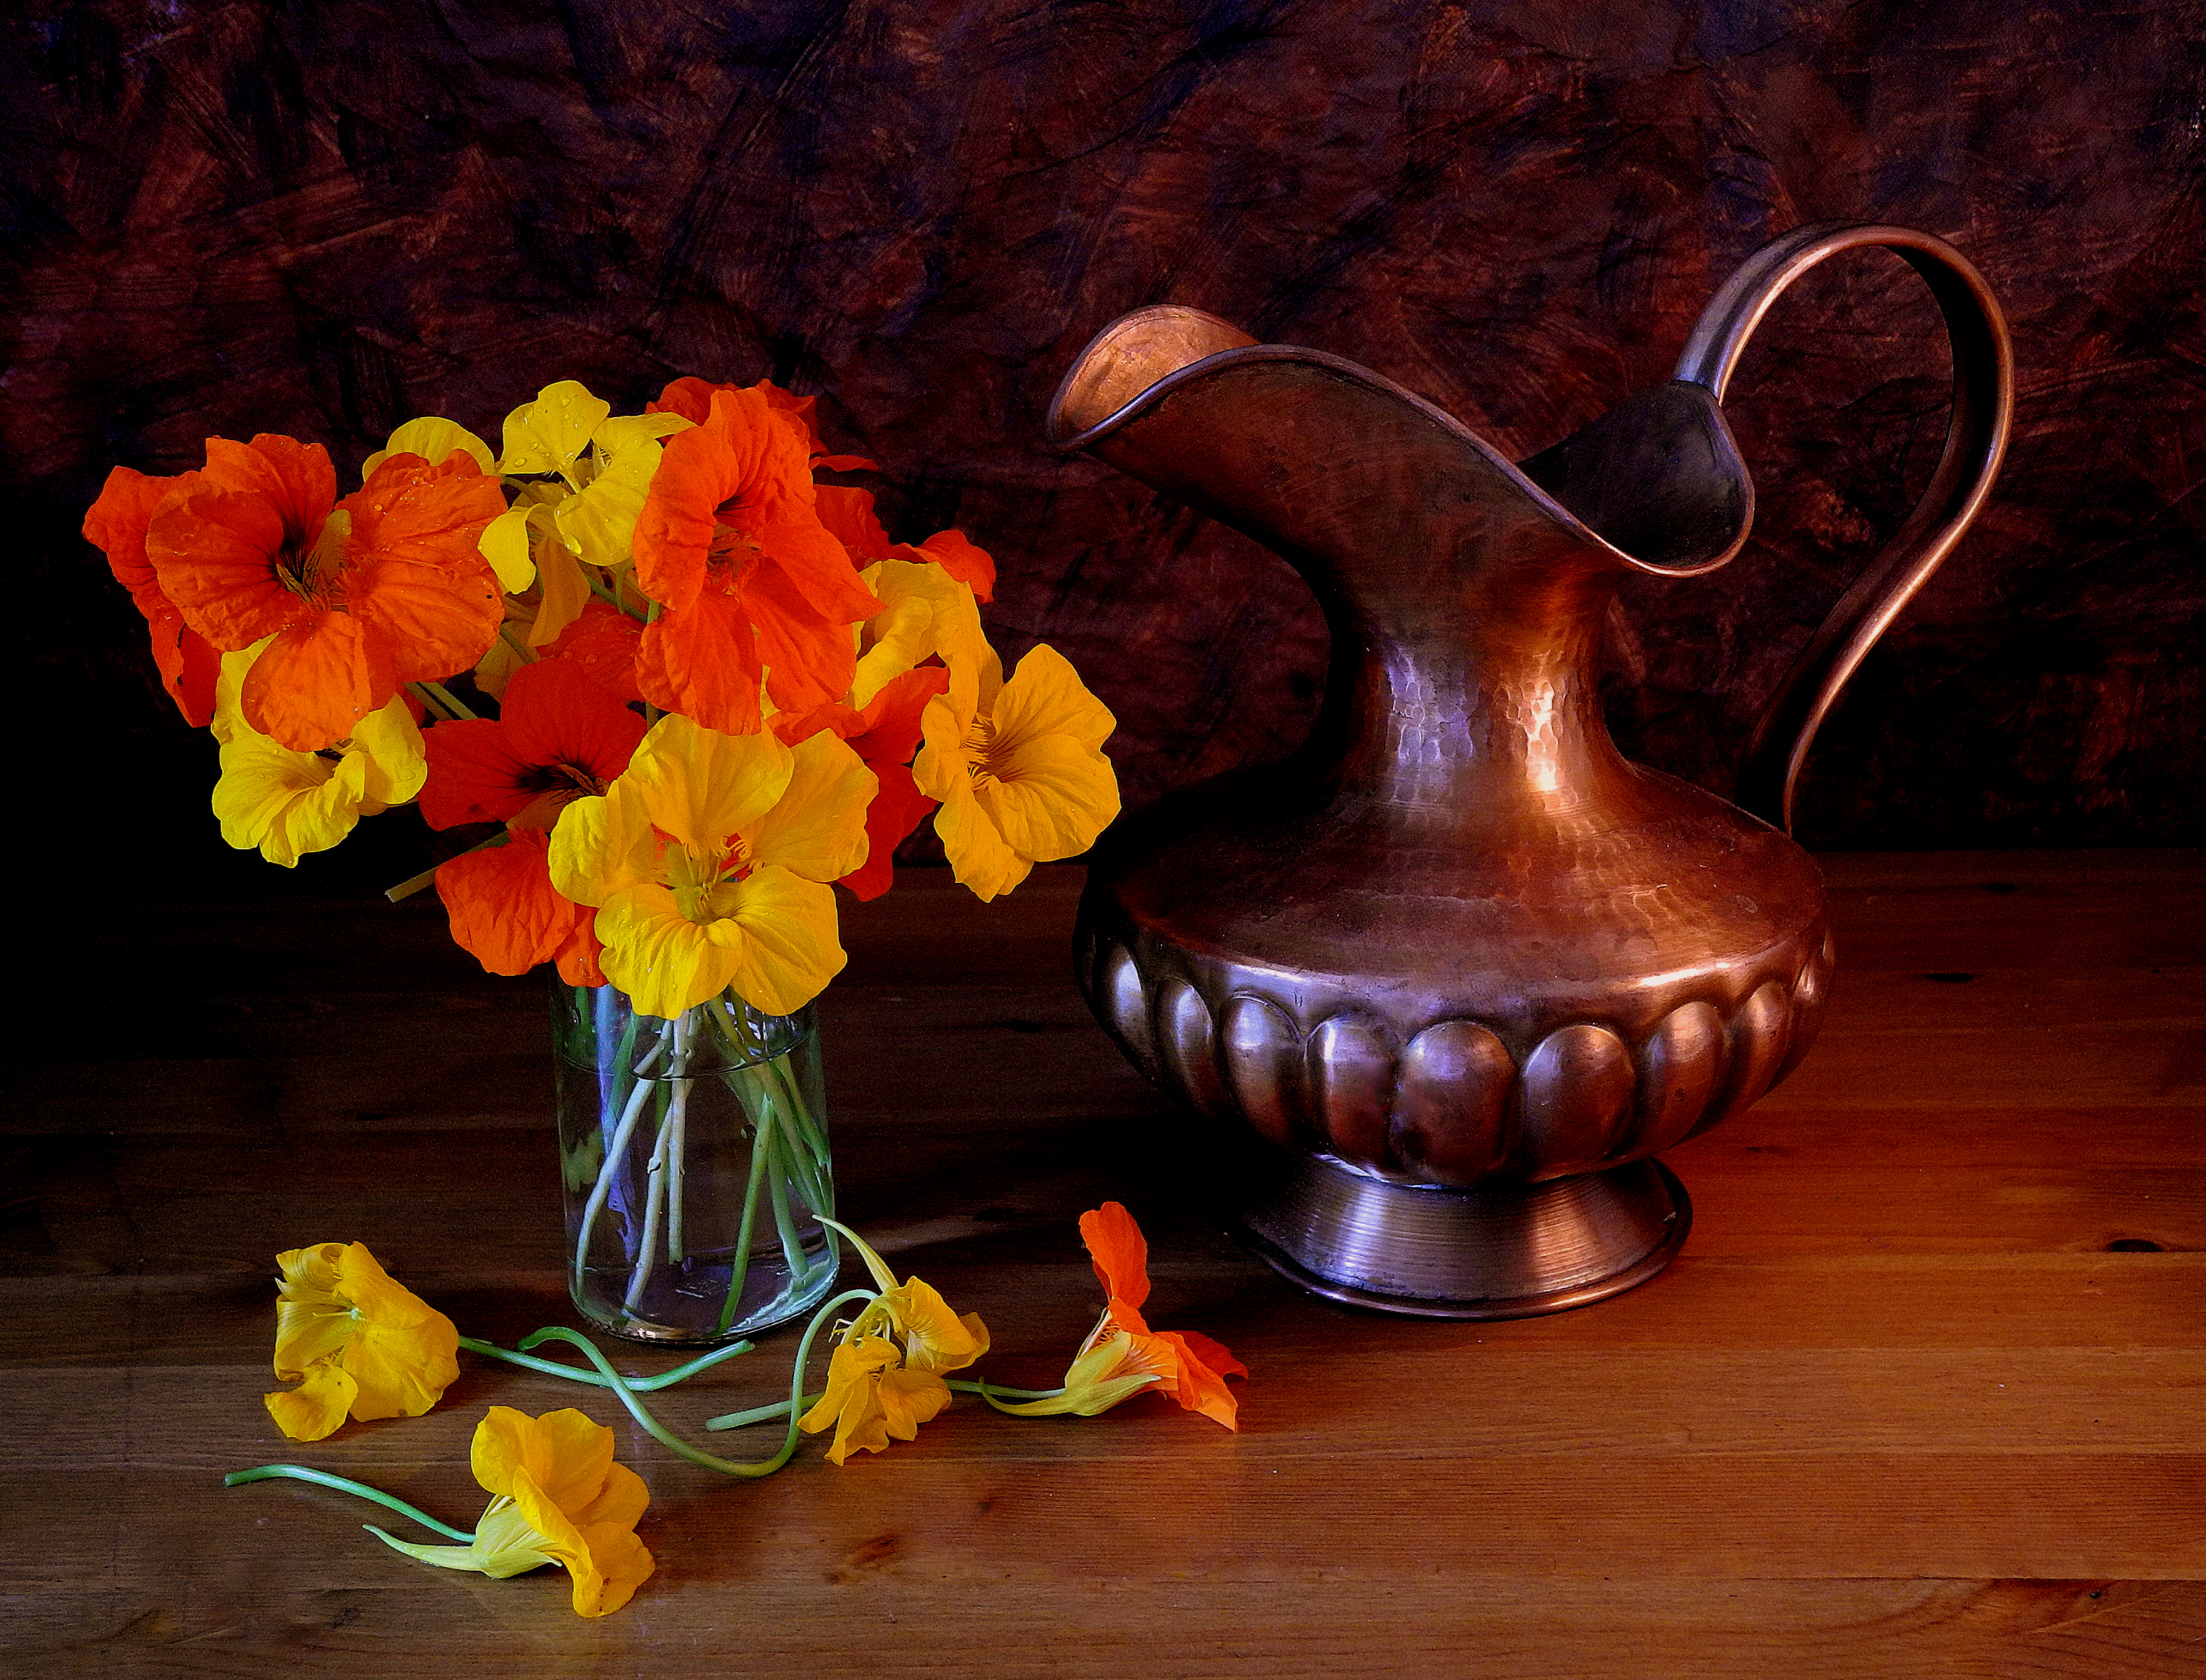 photography, still life, bronze, flower, orange flower, pitcher, yellow flower